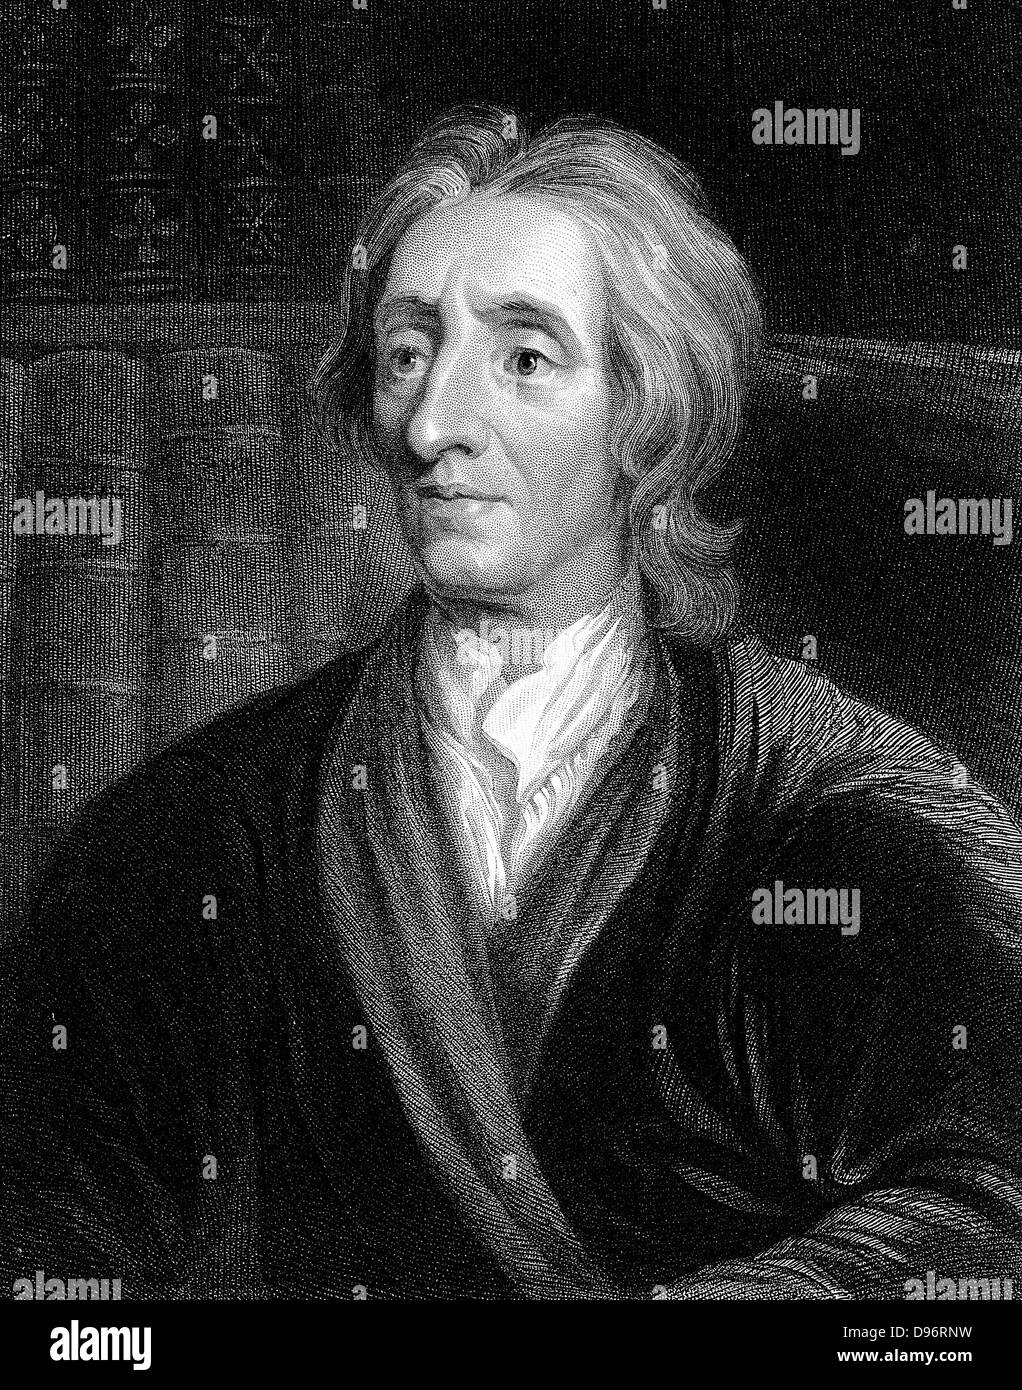 John Locke (1632-1704) filósofo inglés. Retrato grabado por Kneller. Foto de stock